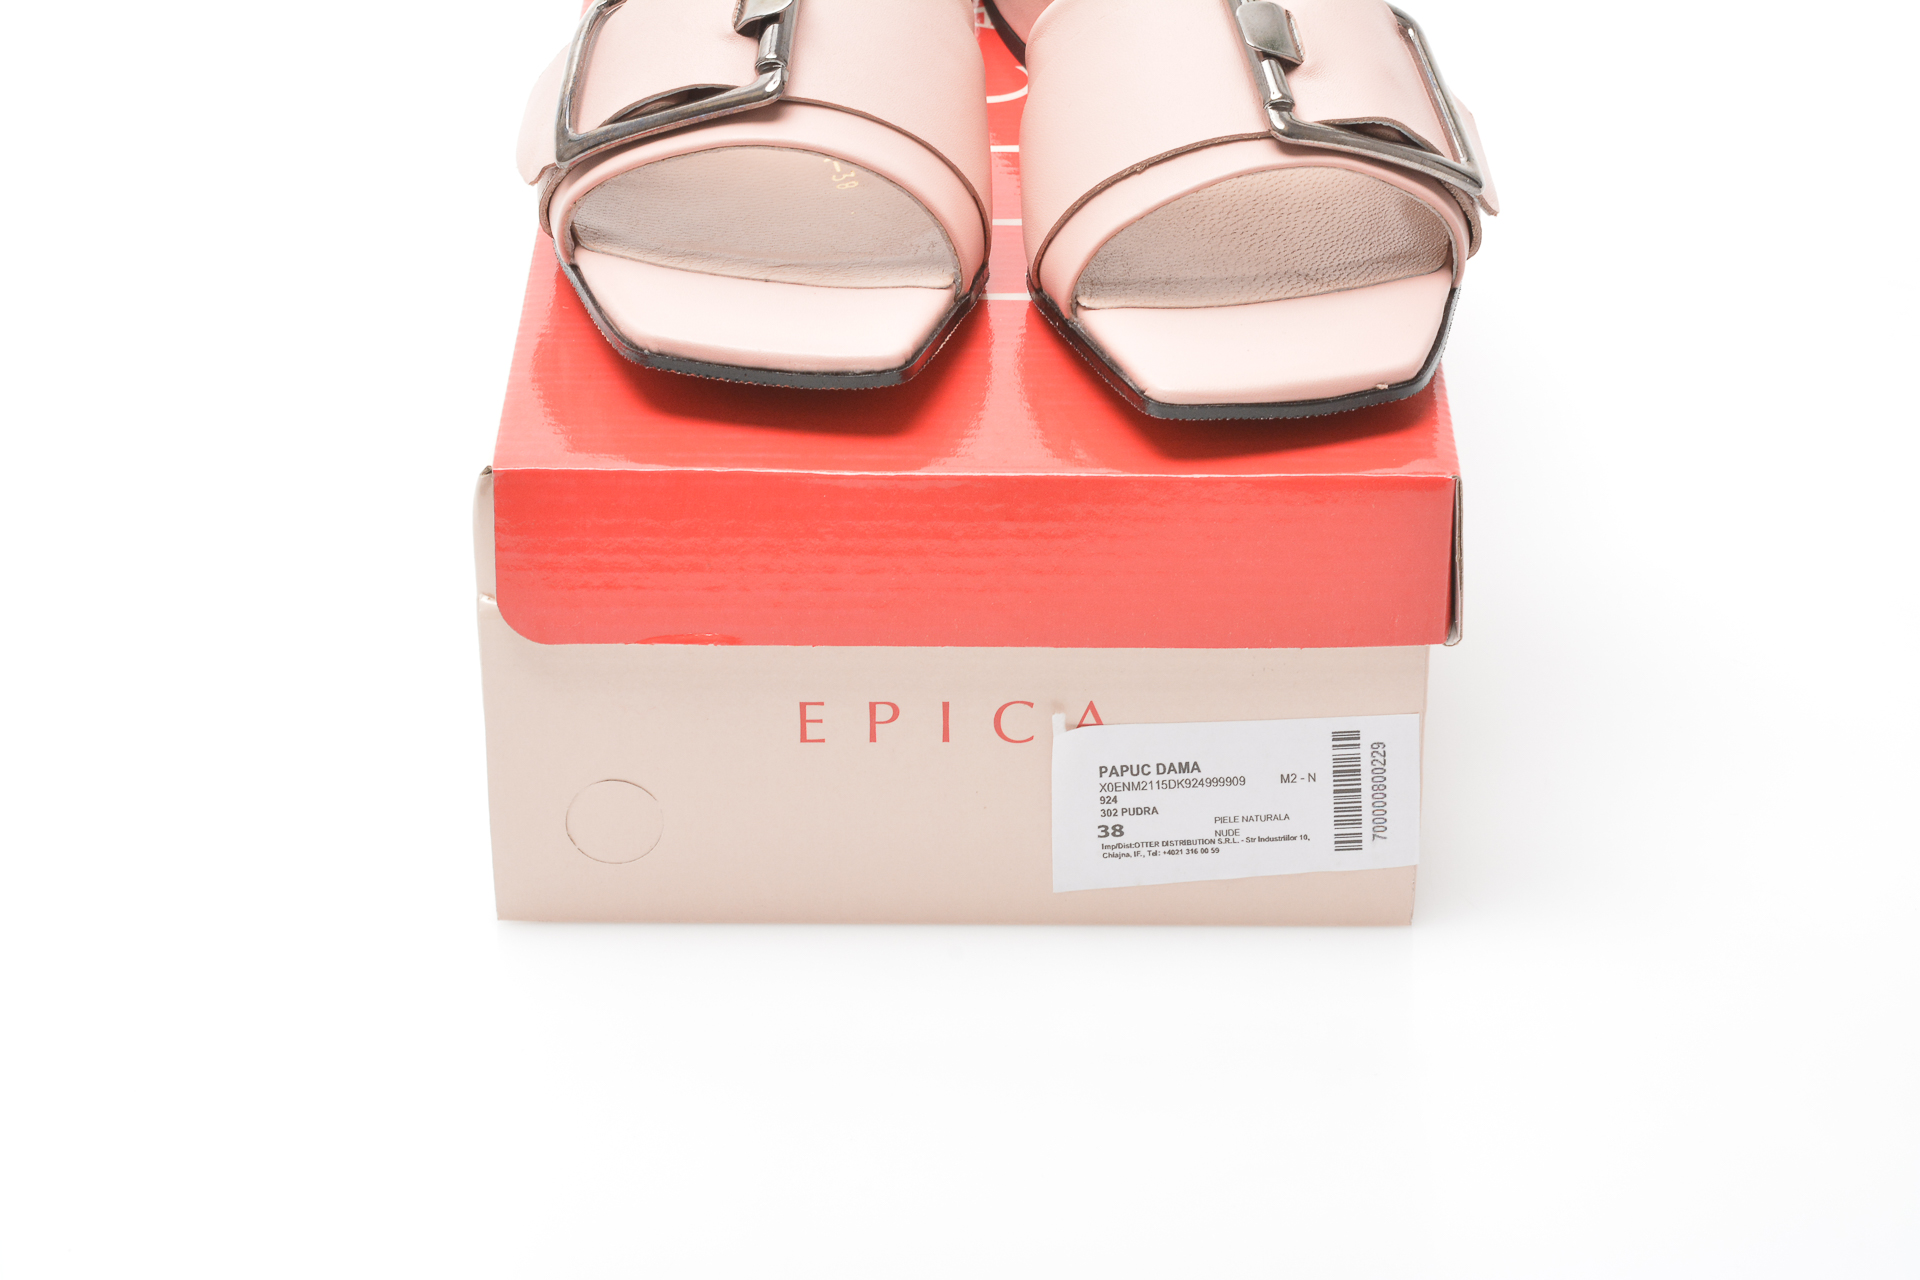 Papuci EPICA nude, 924, din piele naturala Epica imagine noua